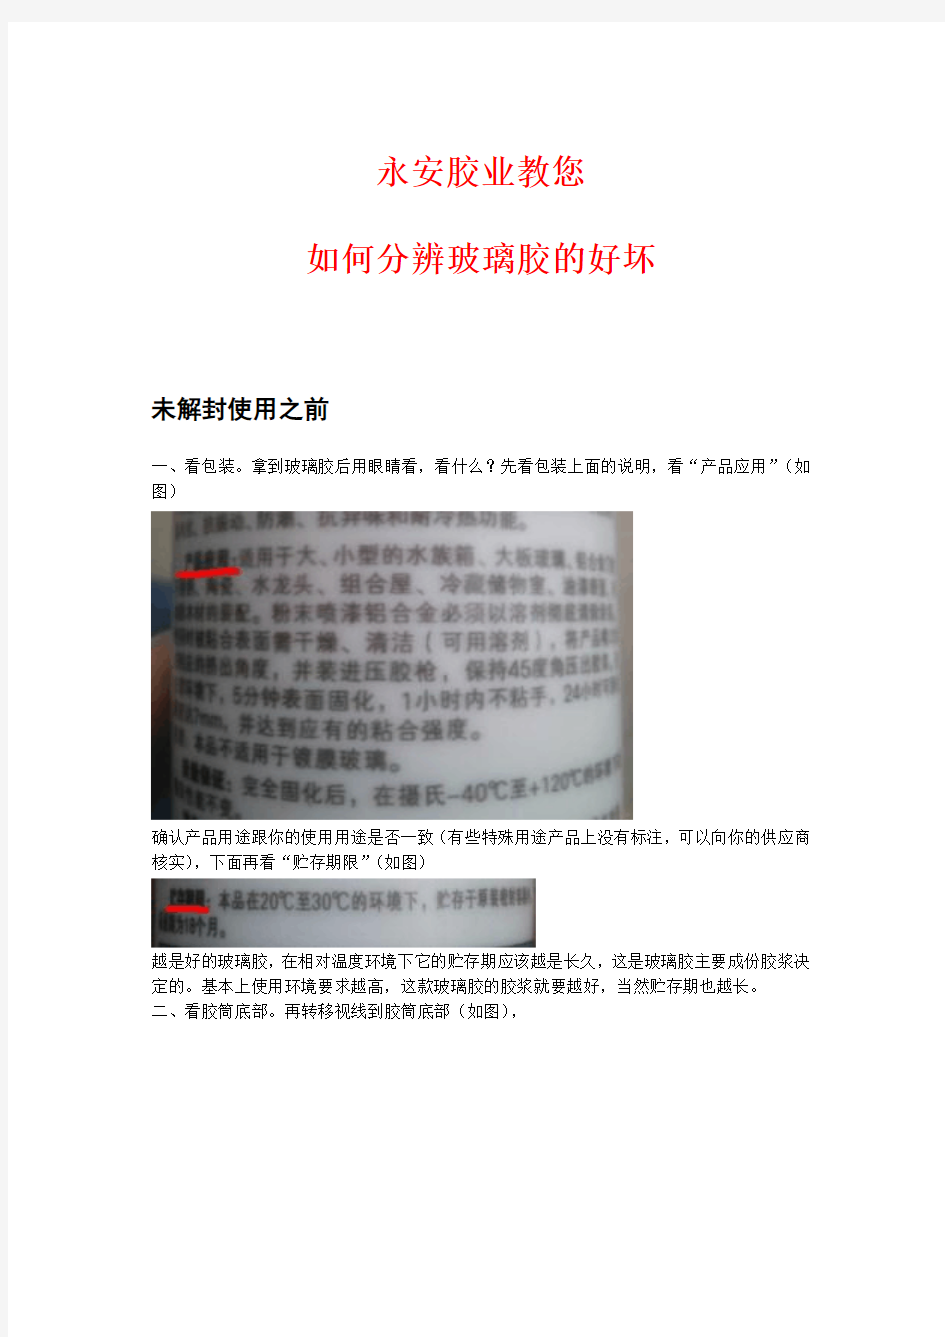 中国硅酮胶五大领军企业教你“如何辨别玻璃胶的好坏”